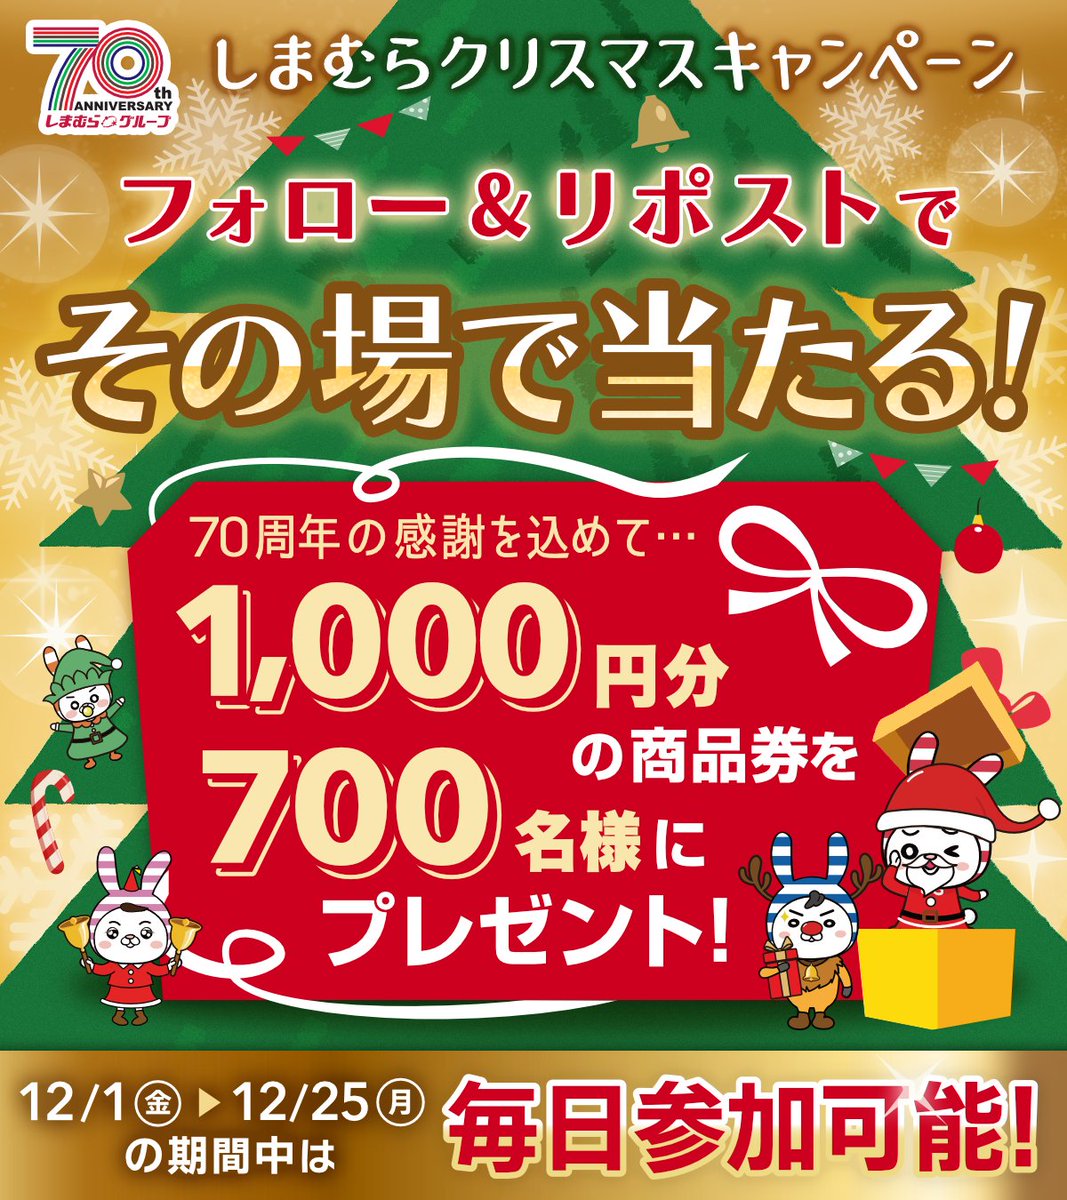 ◤終了まであと2⃣日❗◢ #しまむらクリスマス キャンペーン🎄 グループ共通商品券を700名様にプレゼント🎁 1️⃣@shimamura_grをフォロー 2️⃣この投稿をリポスト リプライから結果を確認🎅 12/25(月)まで ▼今週のチラシ shimamura.gr.jp/shimamura/flie… ▼規約 shimamura.ownly.jp/join/29293 #クリスマスボックス